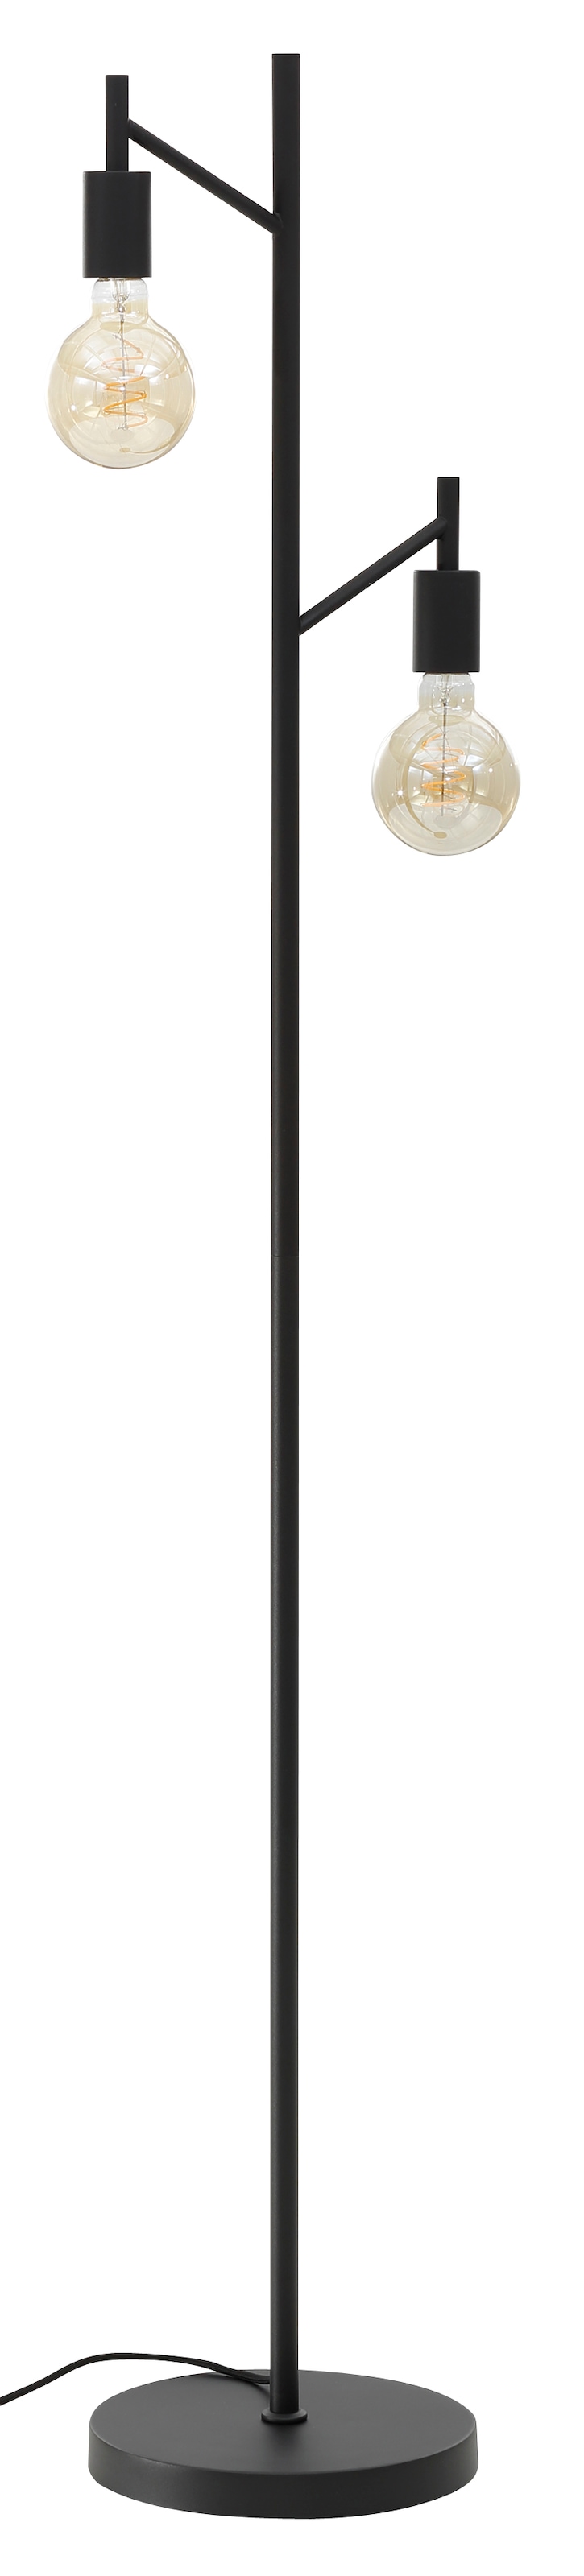 Stehlampe »Jarla«, 2 flammig, moderne, klassisch schwarze Stehleuchte, Höhe 155 cm